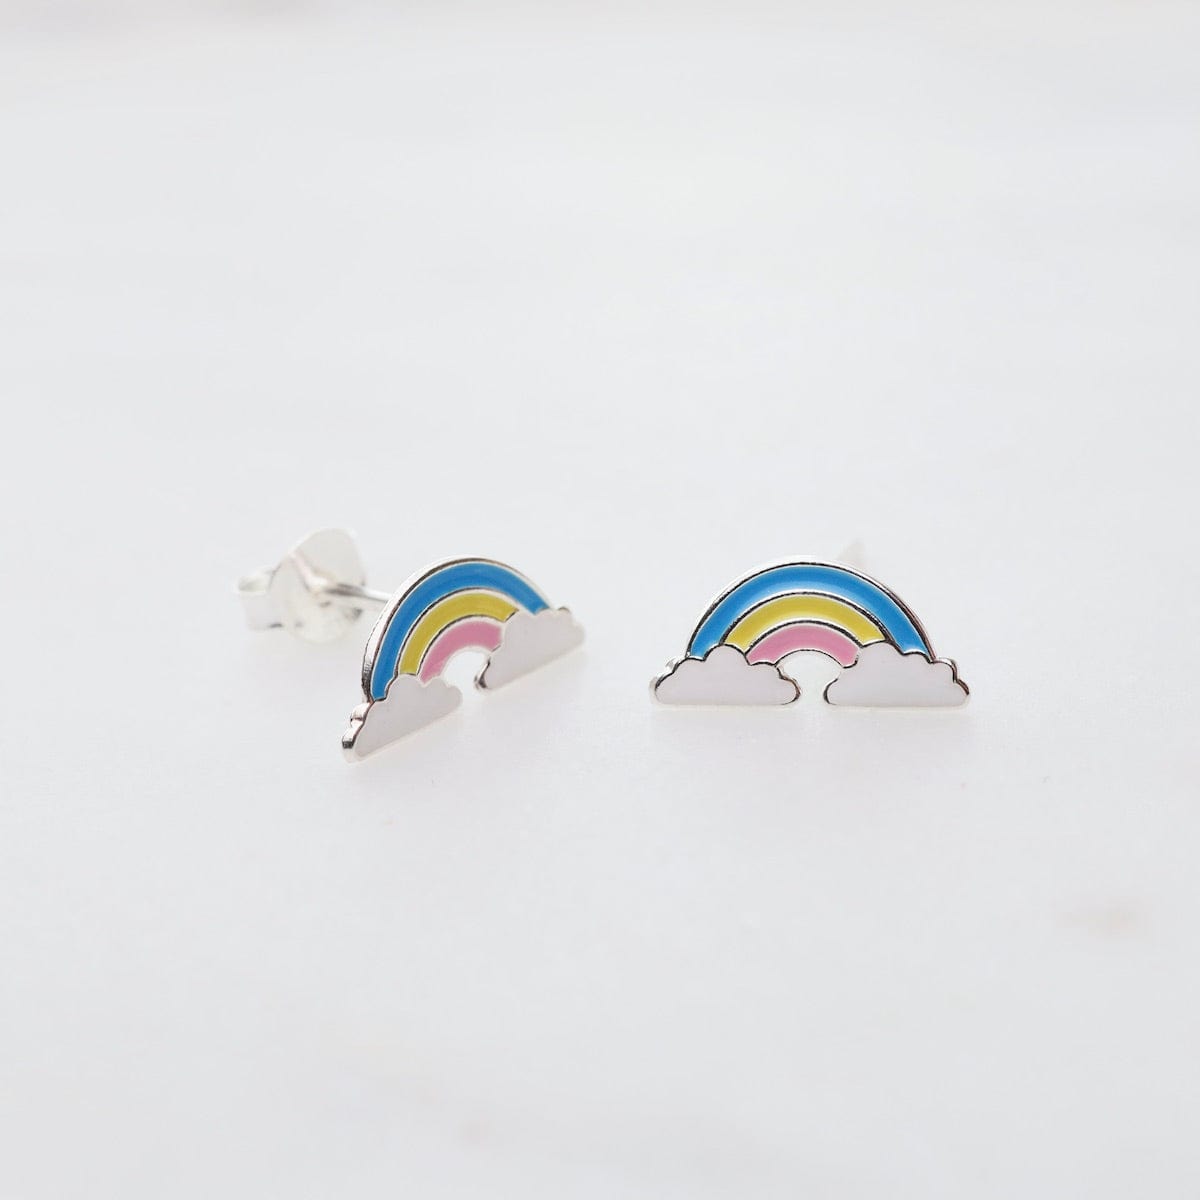 EAR Enamel Rainbow in Clouds Post Earrings - Blue, Yellow, & Pink